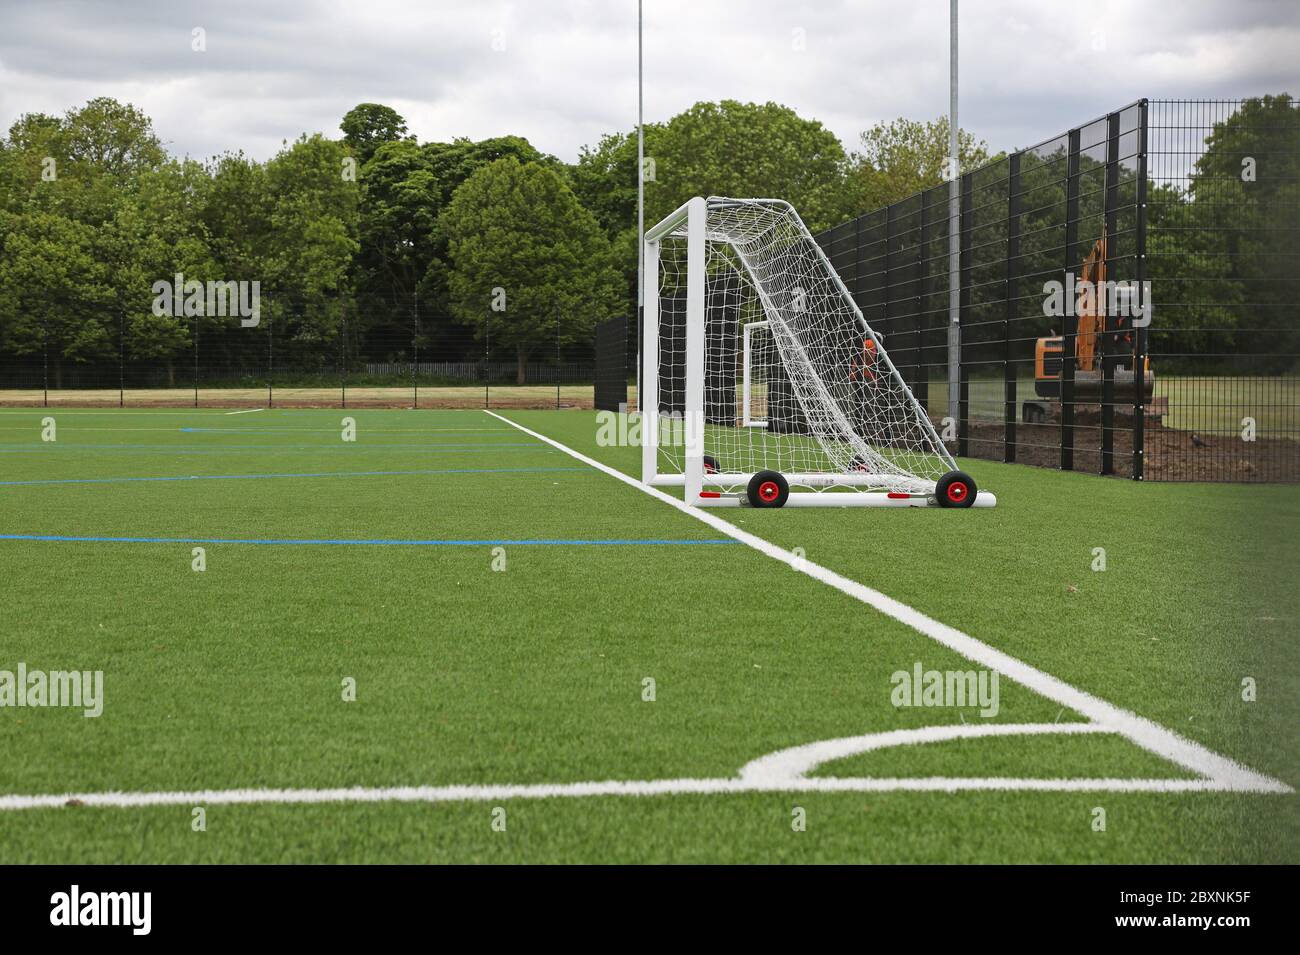 Ein neu installierter Allwetter-Schule Sportplatz mit Kunstrasen. Zeigt das Layout für Fußball mit Tor und Ecke des Spielfelds. London, Großbritannien. Stockfoto